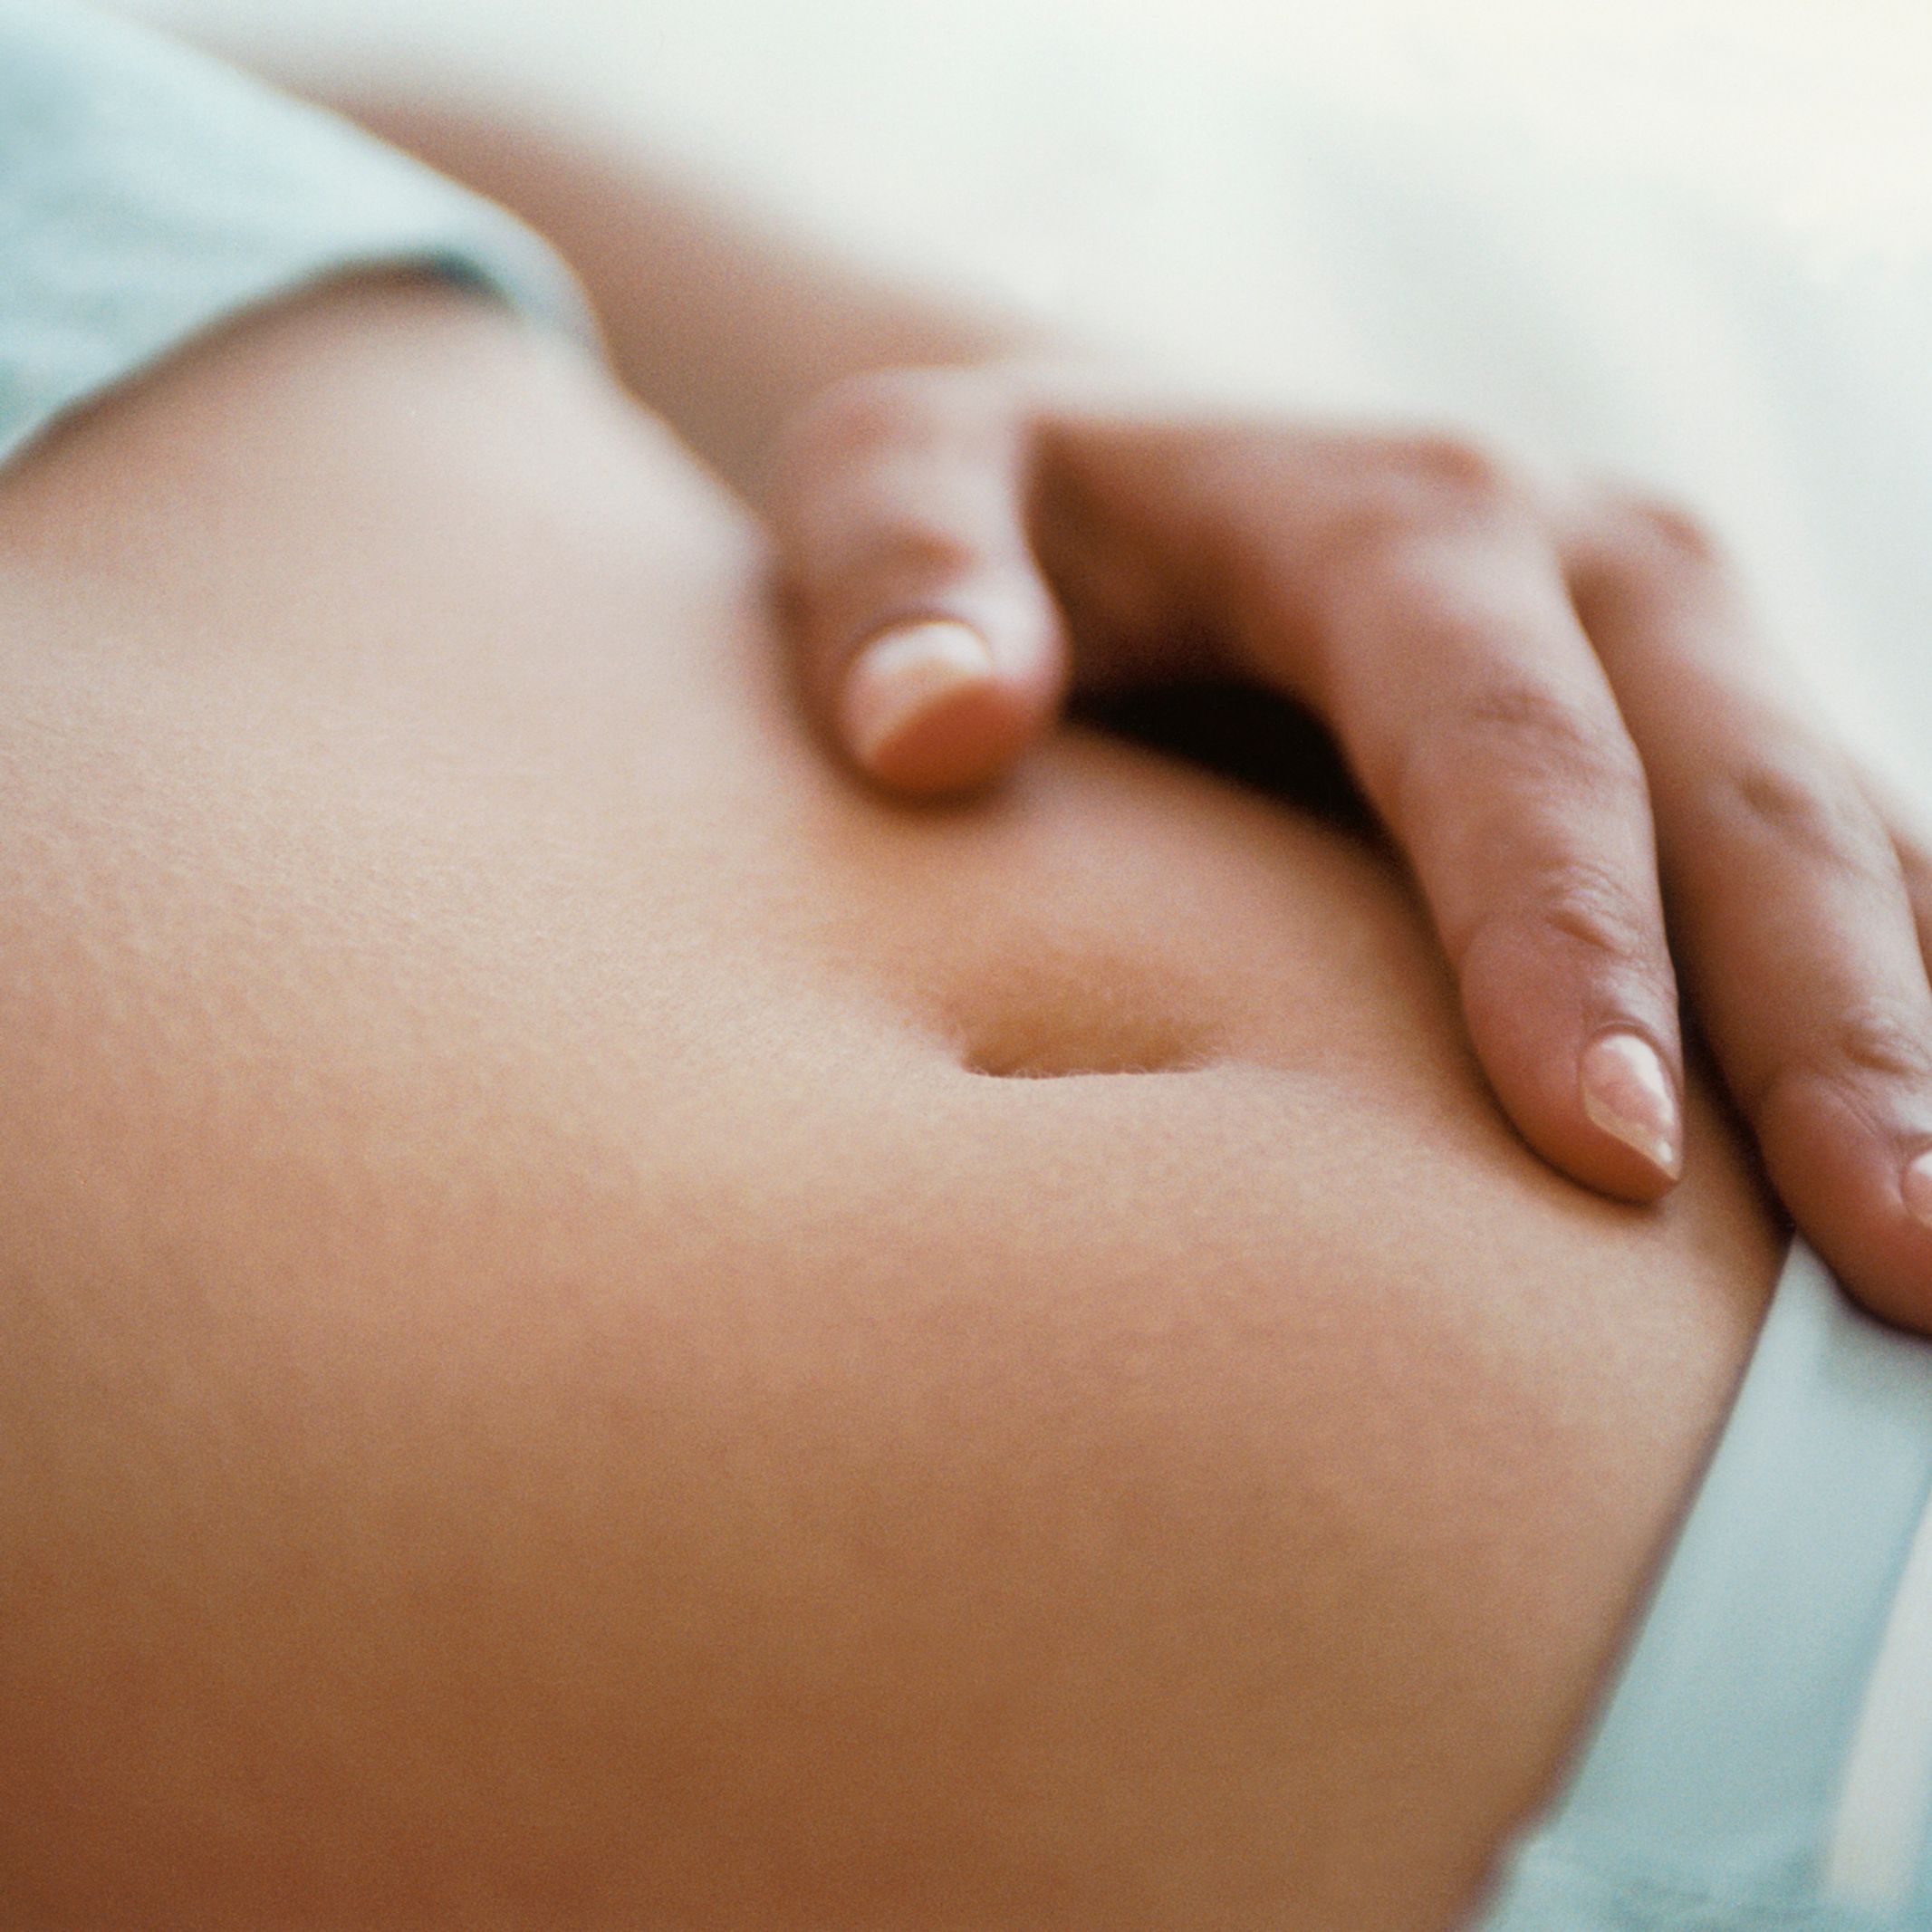 Comment savoir si on est enceinte ? les premiers signes